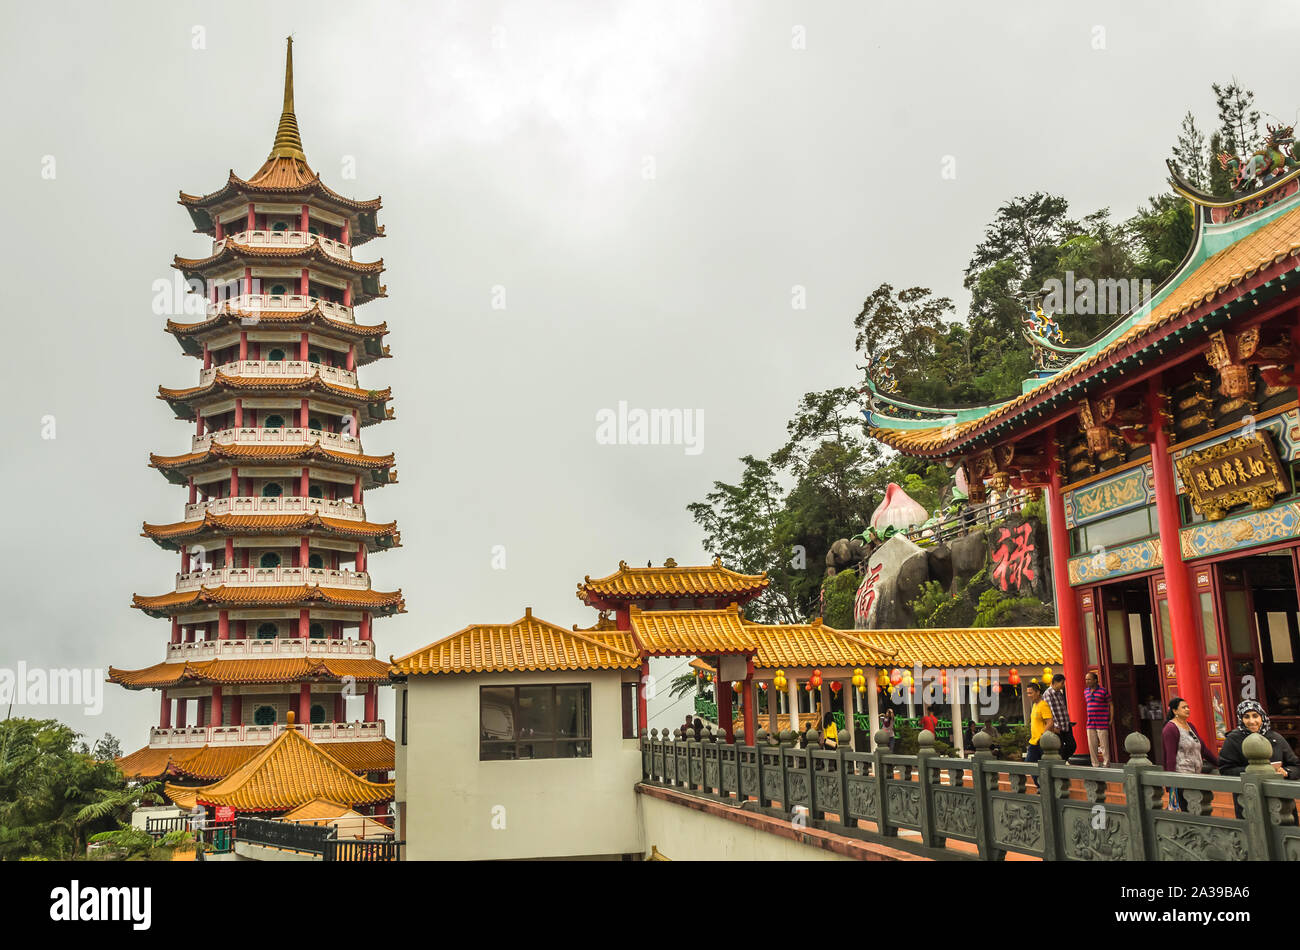 PAHANG, MALASIA - Diciembre 18, 2018: Pagoda en Chin Swee Templo, las Tierras Altas de Genting. Es una famosa atracción turística cerca de Kuala Lumpur. Foto de stock